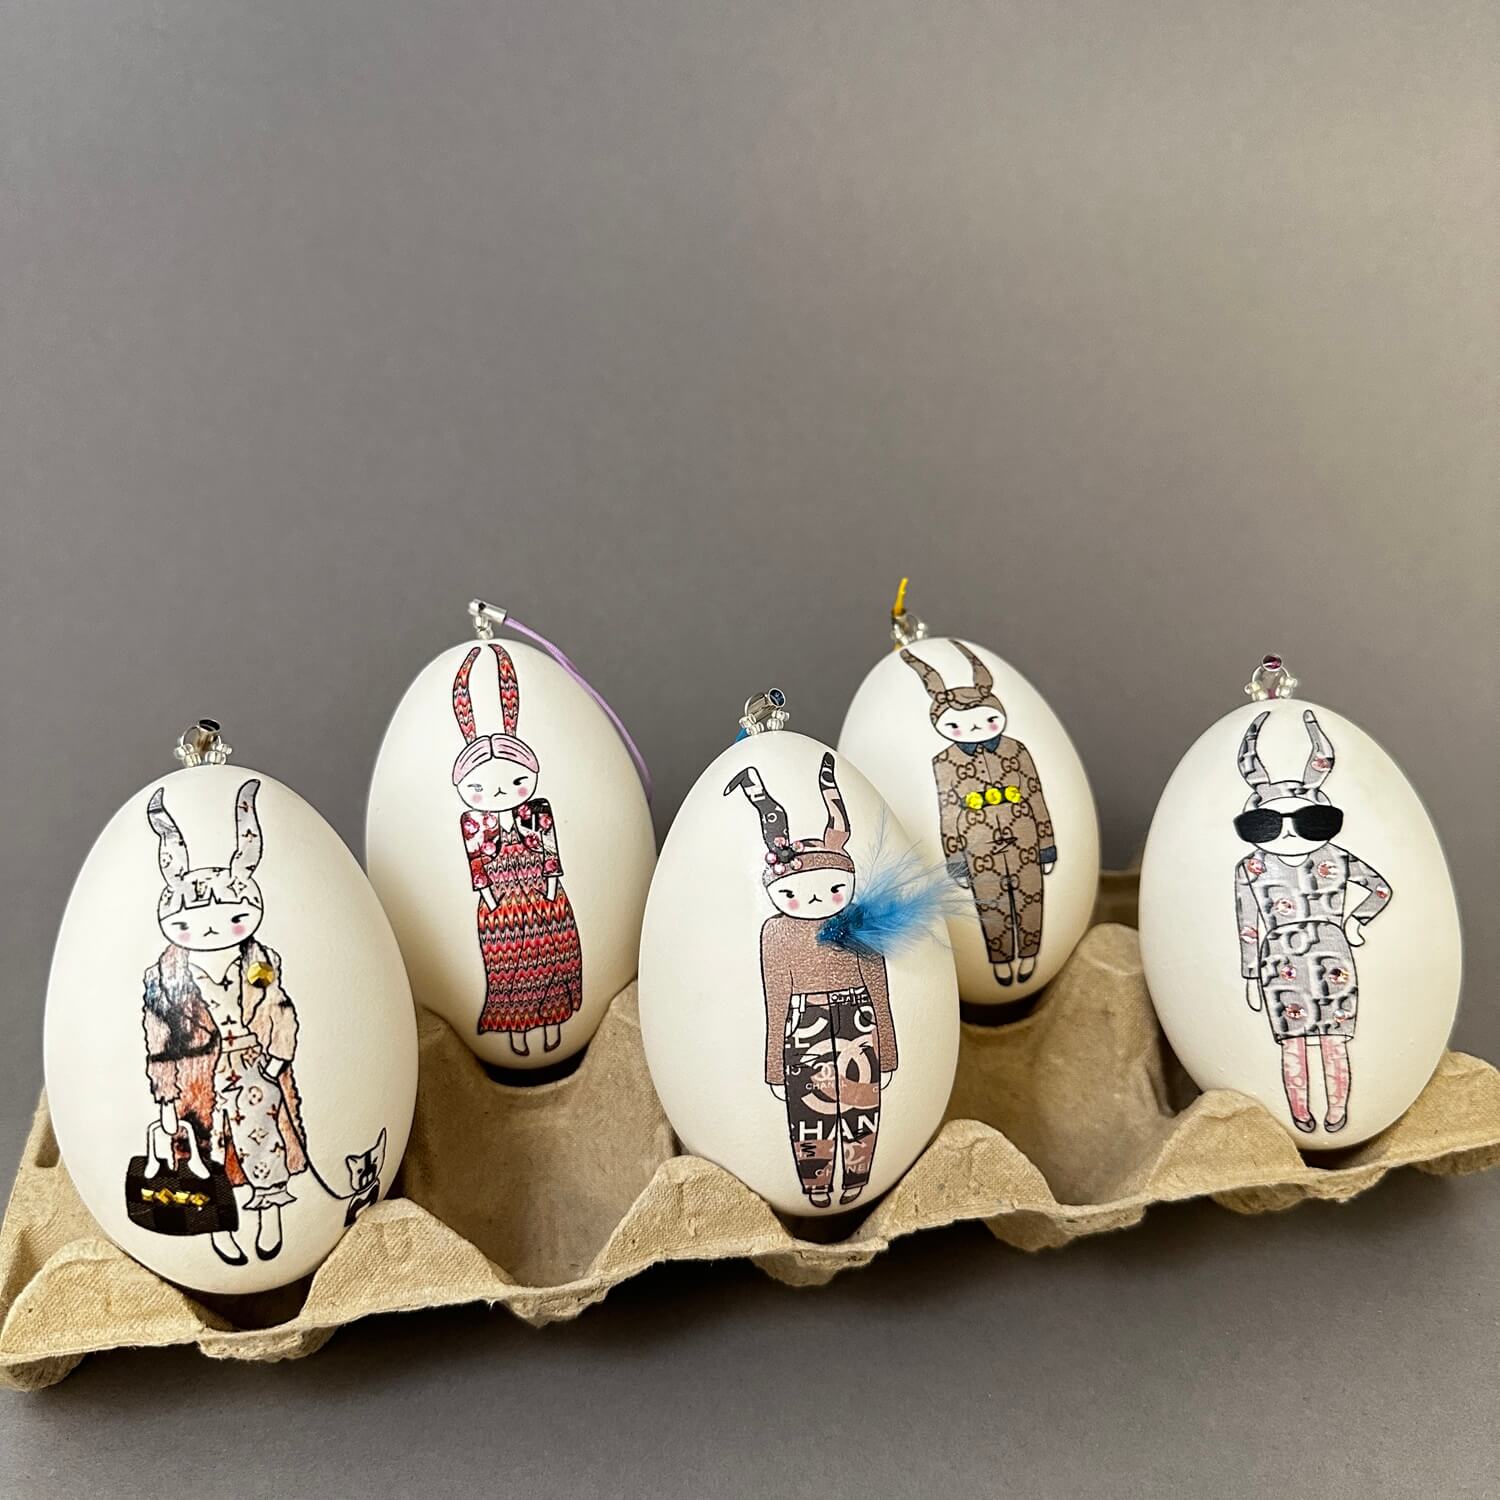 Ostereier-Deko: Echte Kunst Eier – ei-nzigartig trifft auf